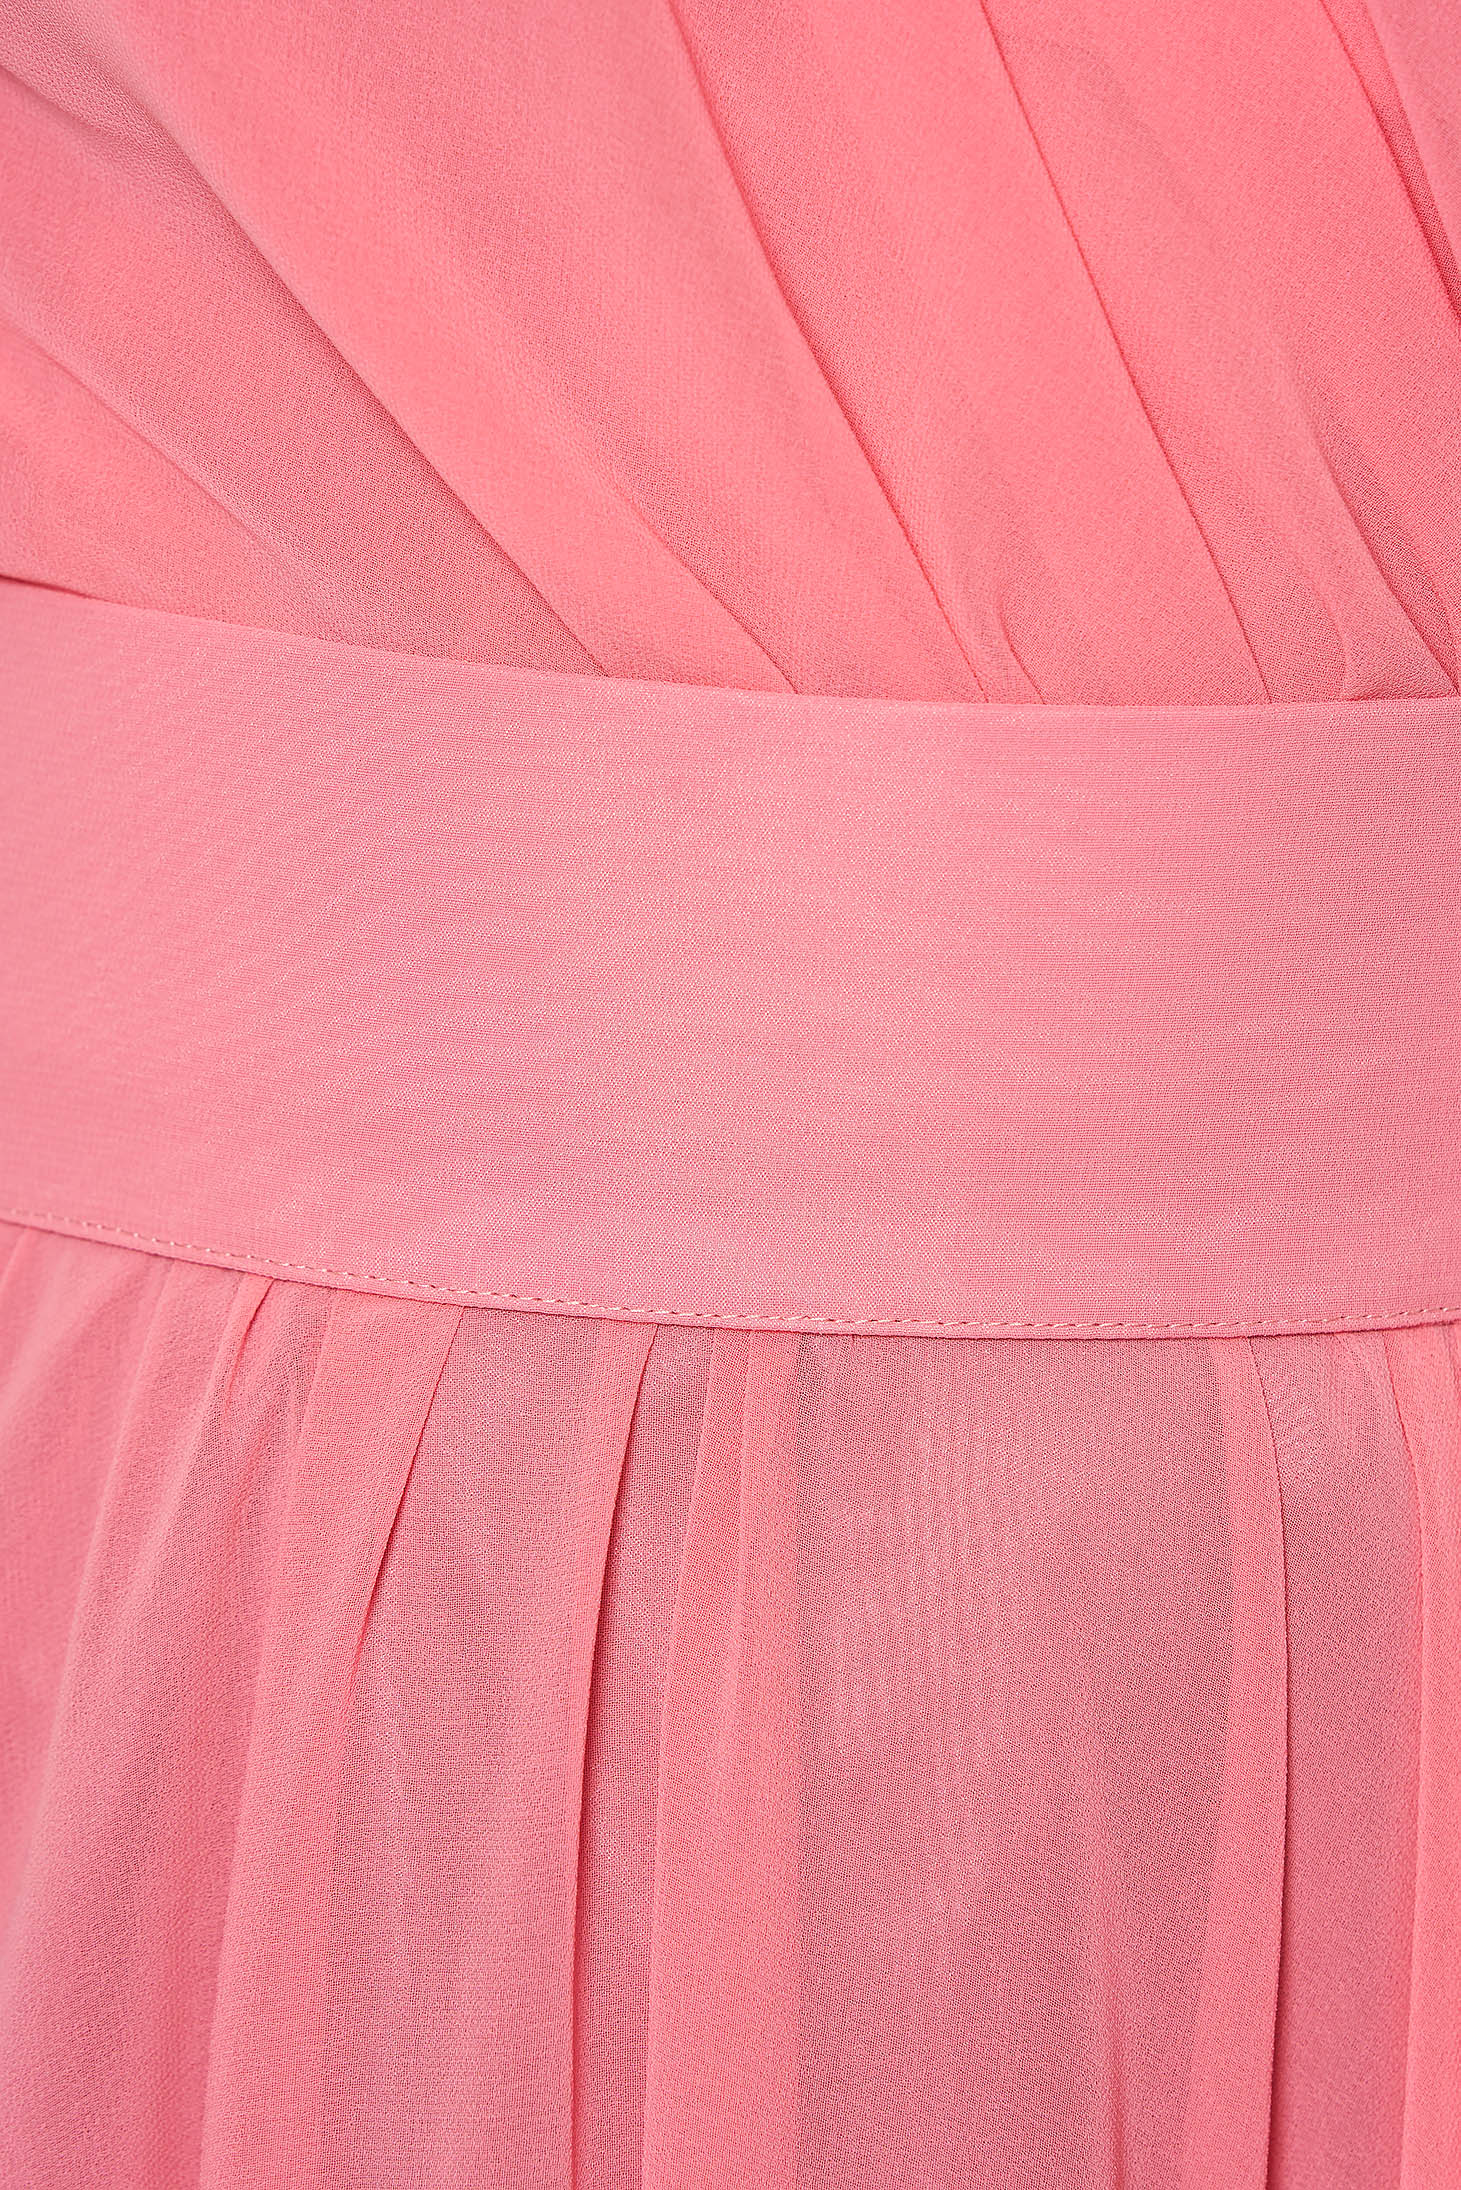 Rózsaszínű Ana Radu hosszú harang ruha fátyol belső béléssel övvel ellátva 4 - StarShinerS.hu